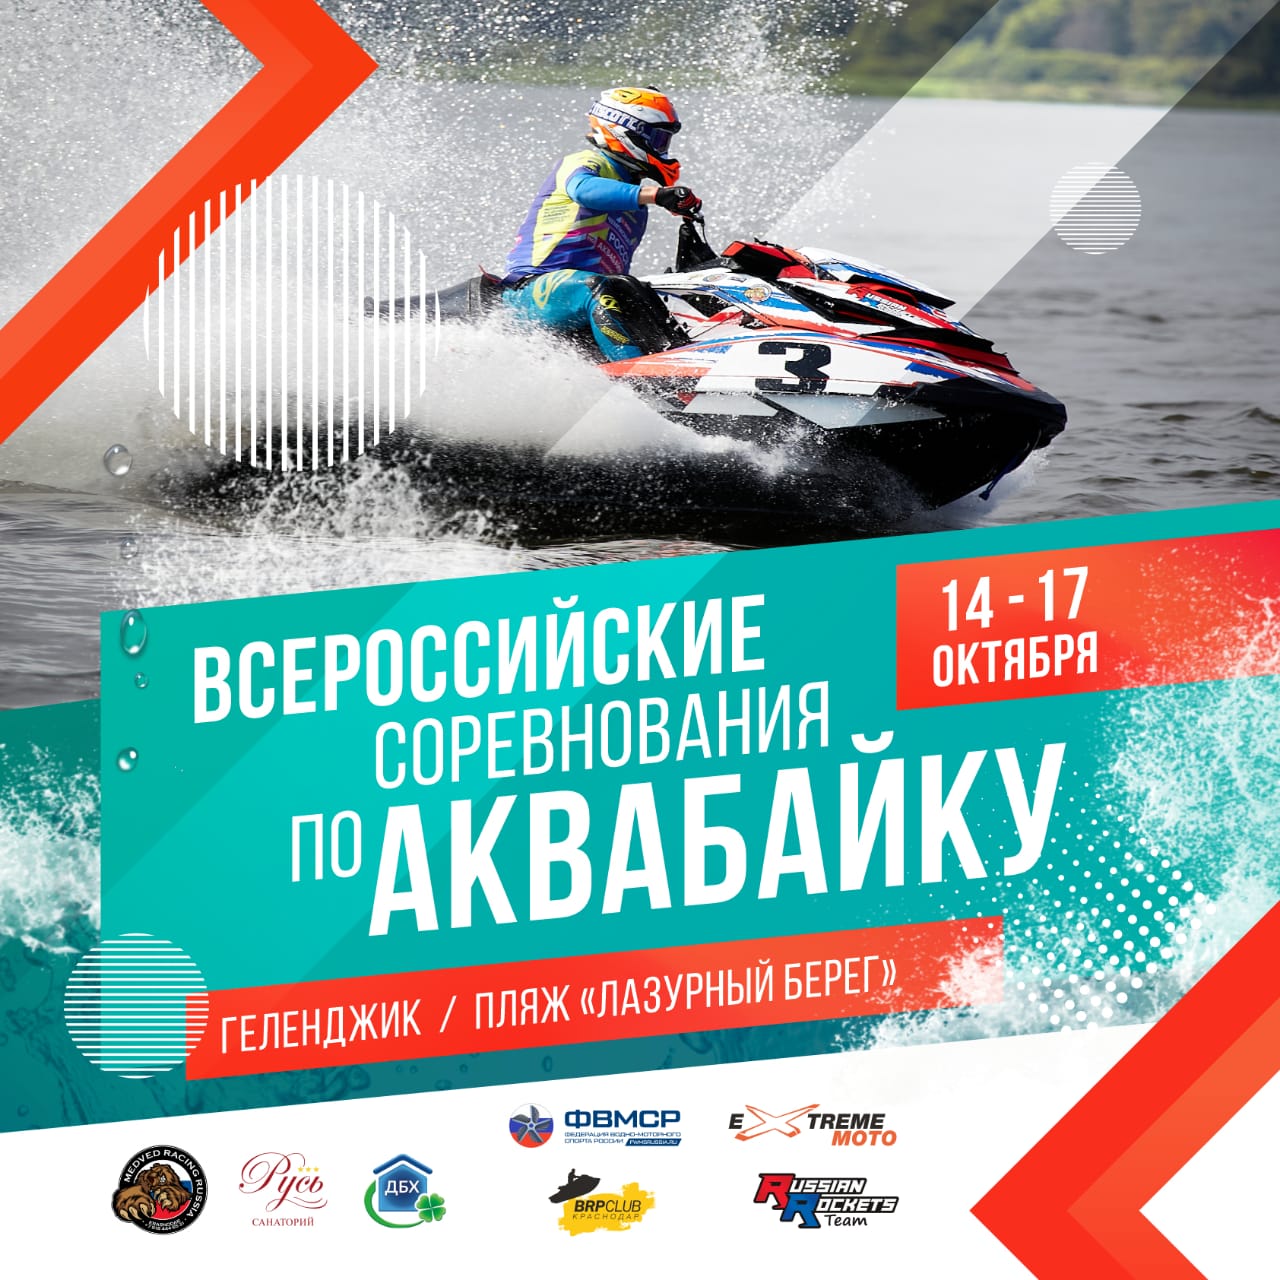 Всероссийские соревнования по водно-моторному спорту, Геленджик 14-17.10.2021